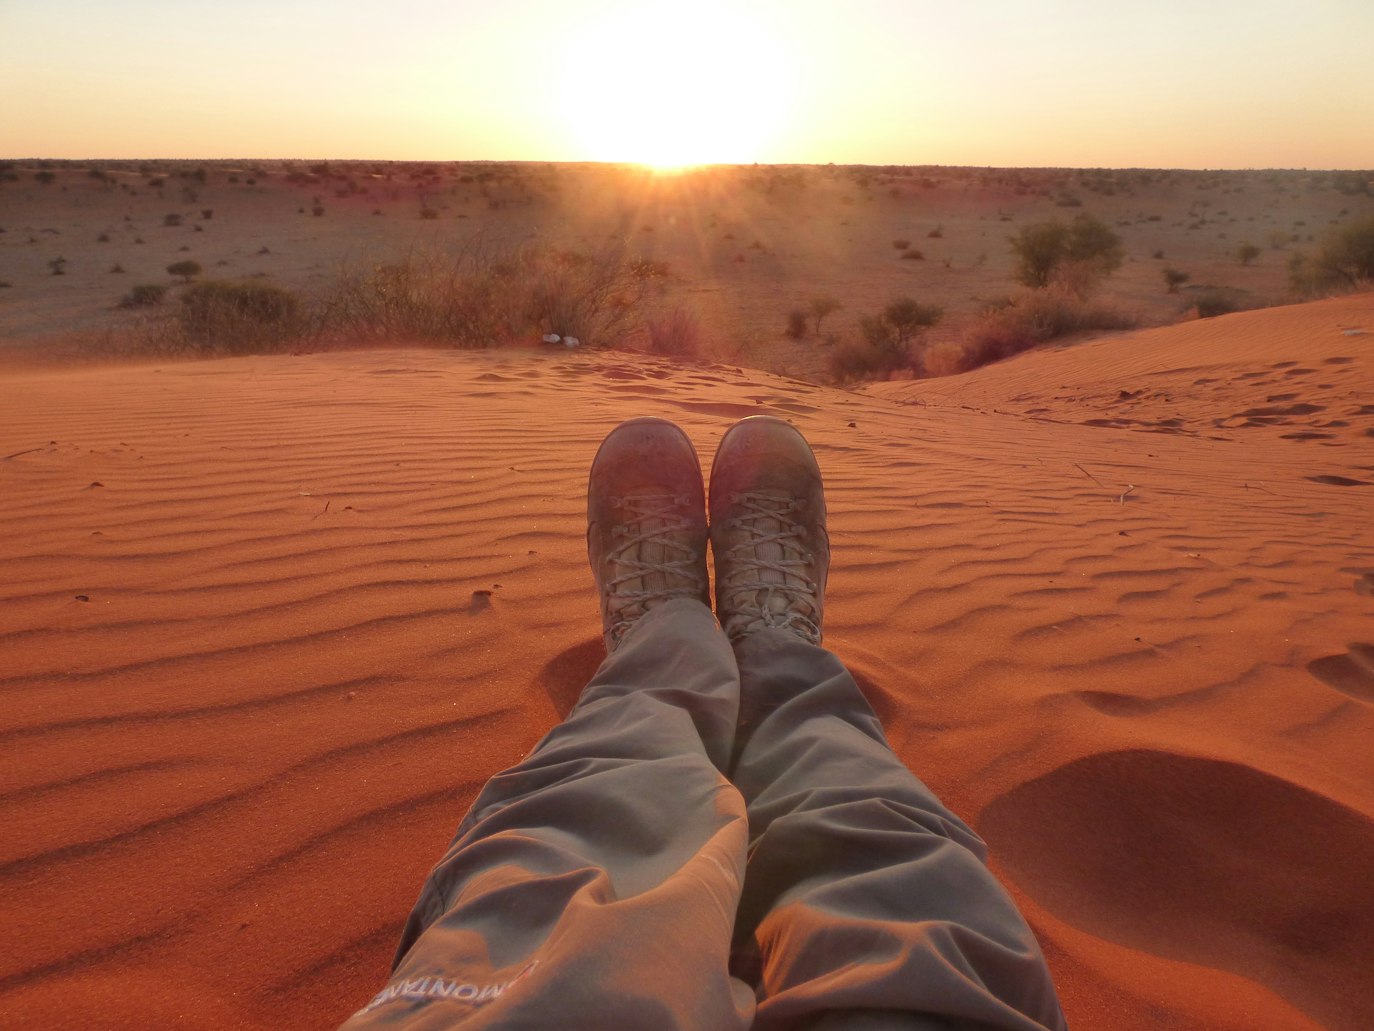 scarpe da trekking sul deserto rosso